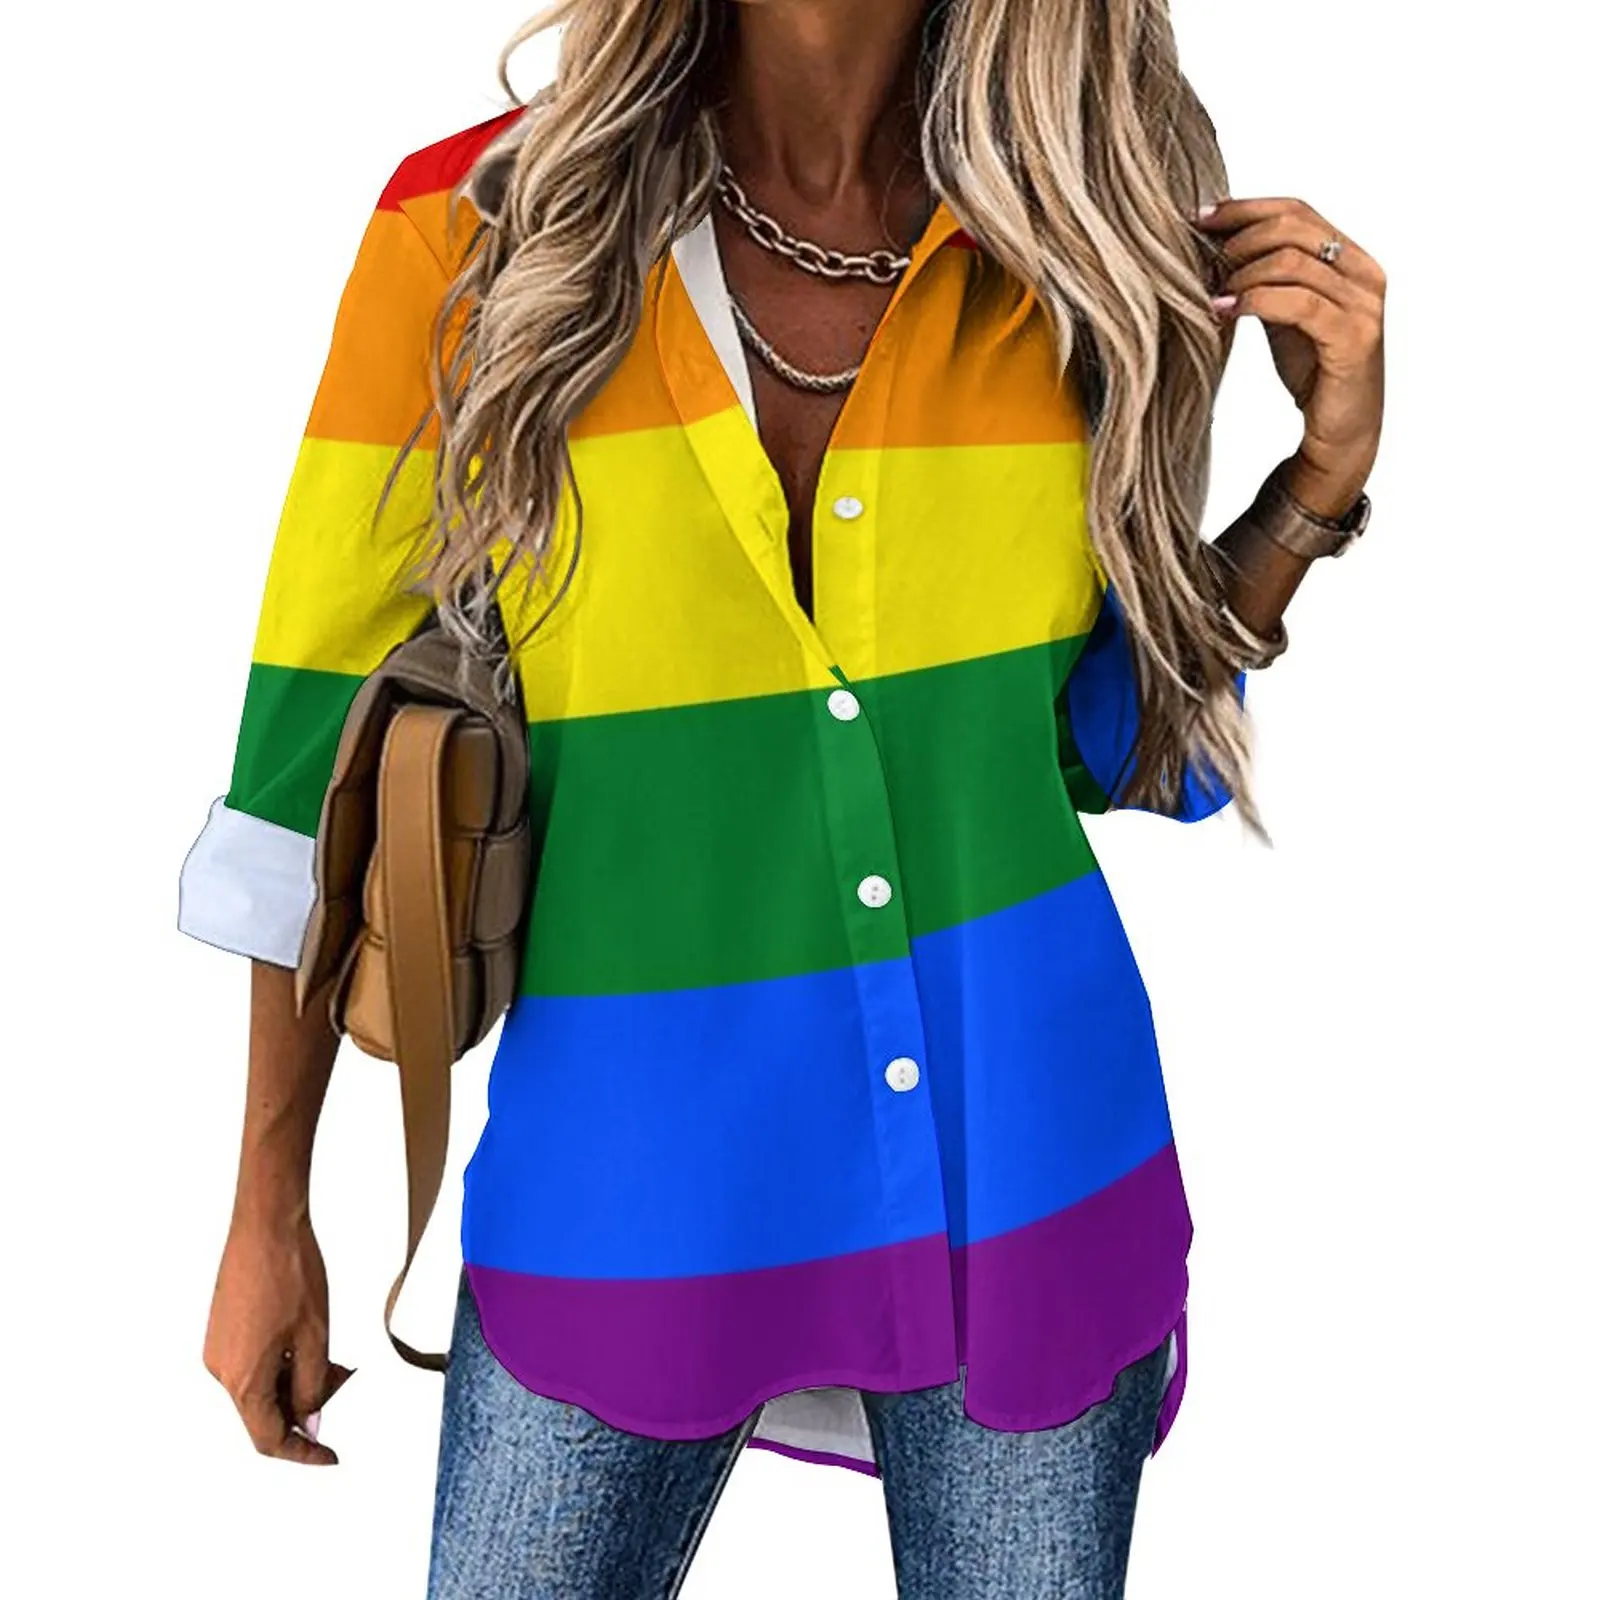 

ЛГБТ Радуга Свободная блузка Гордость Флаг полосатая уличная одежда большие блузки женские винтажные рубашки с длинным рукавом Весенний п...